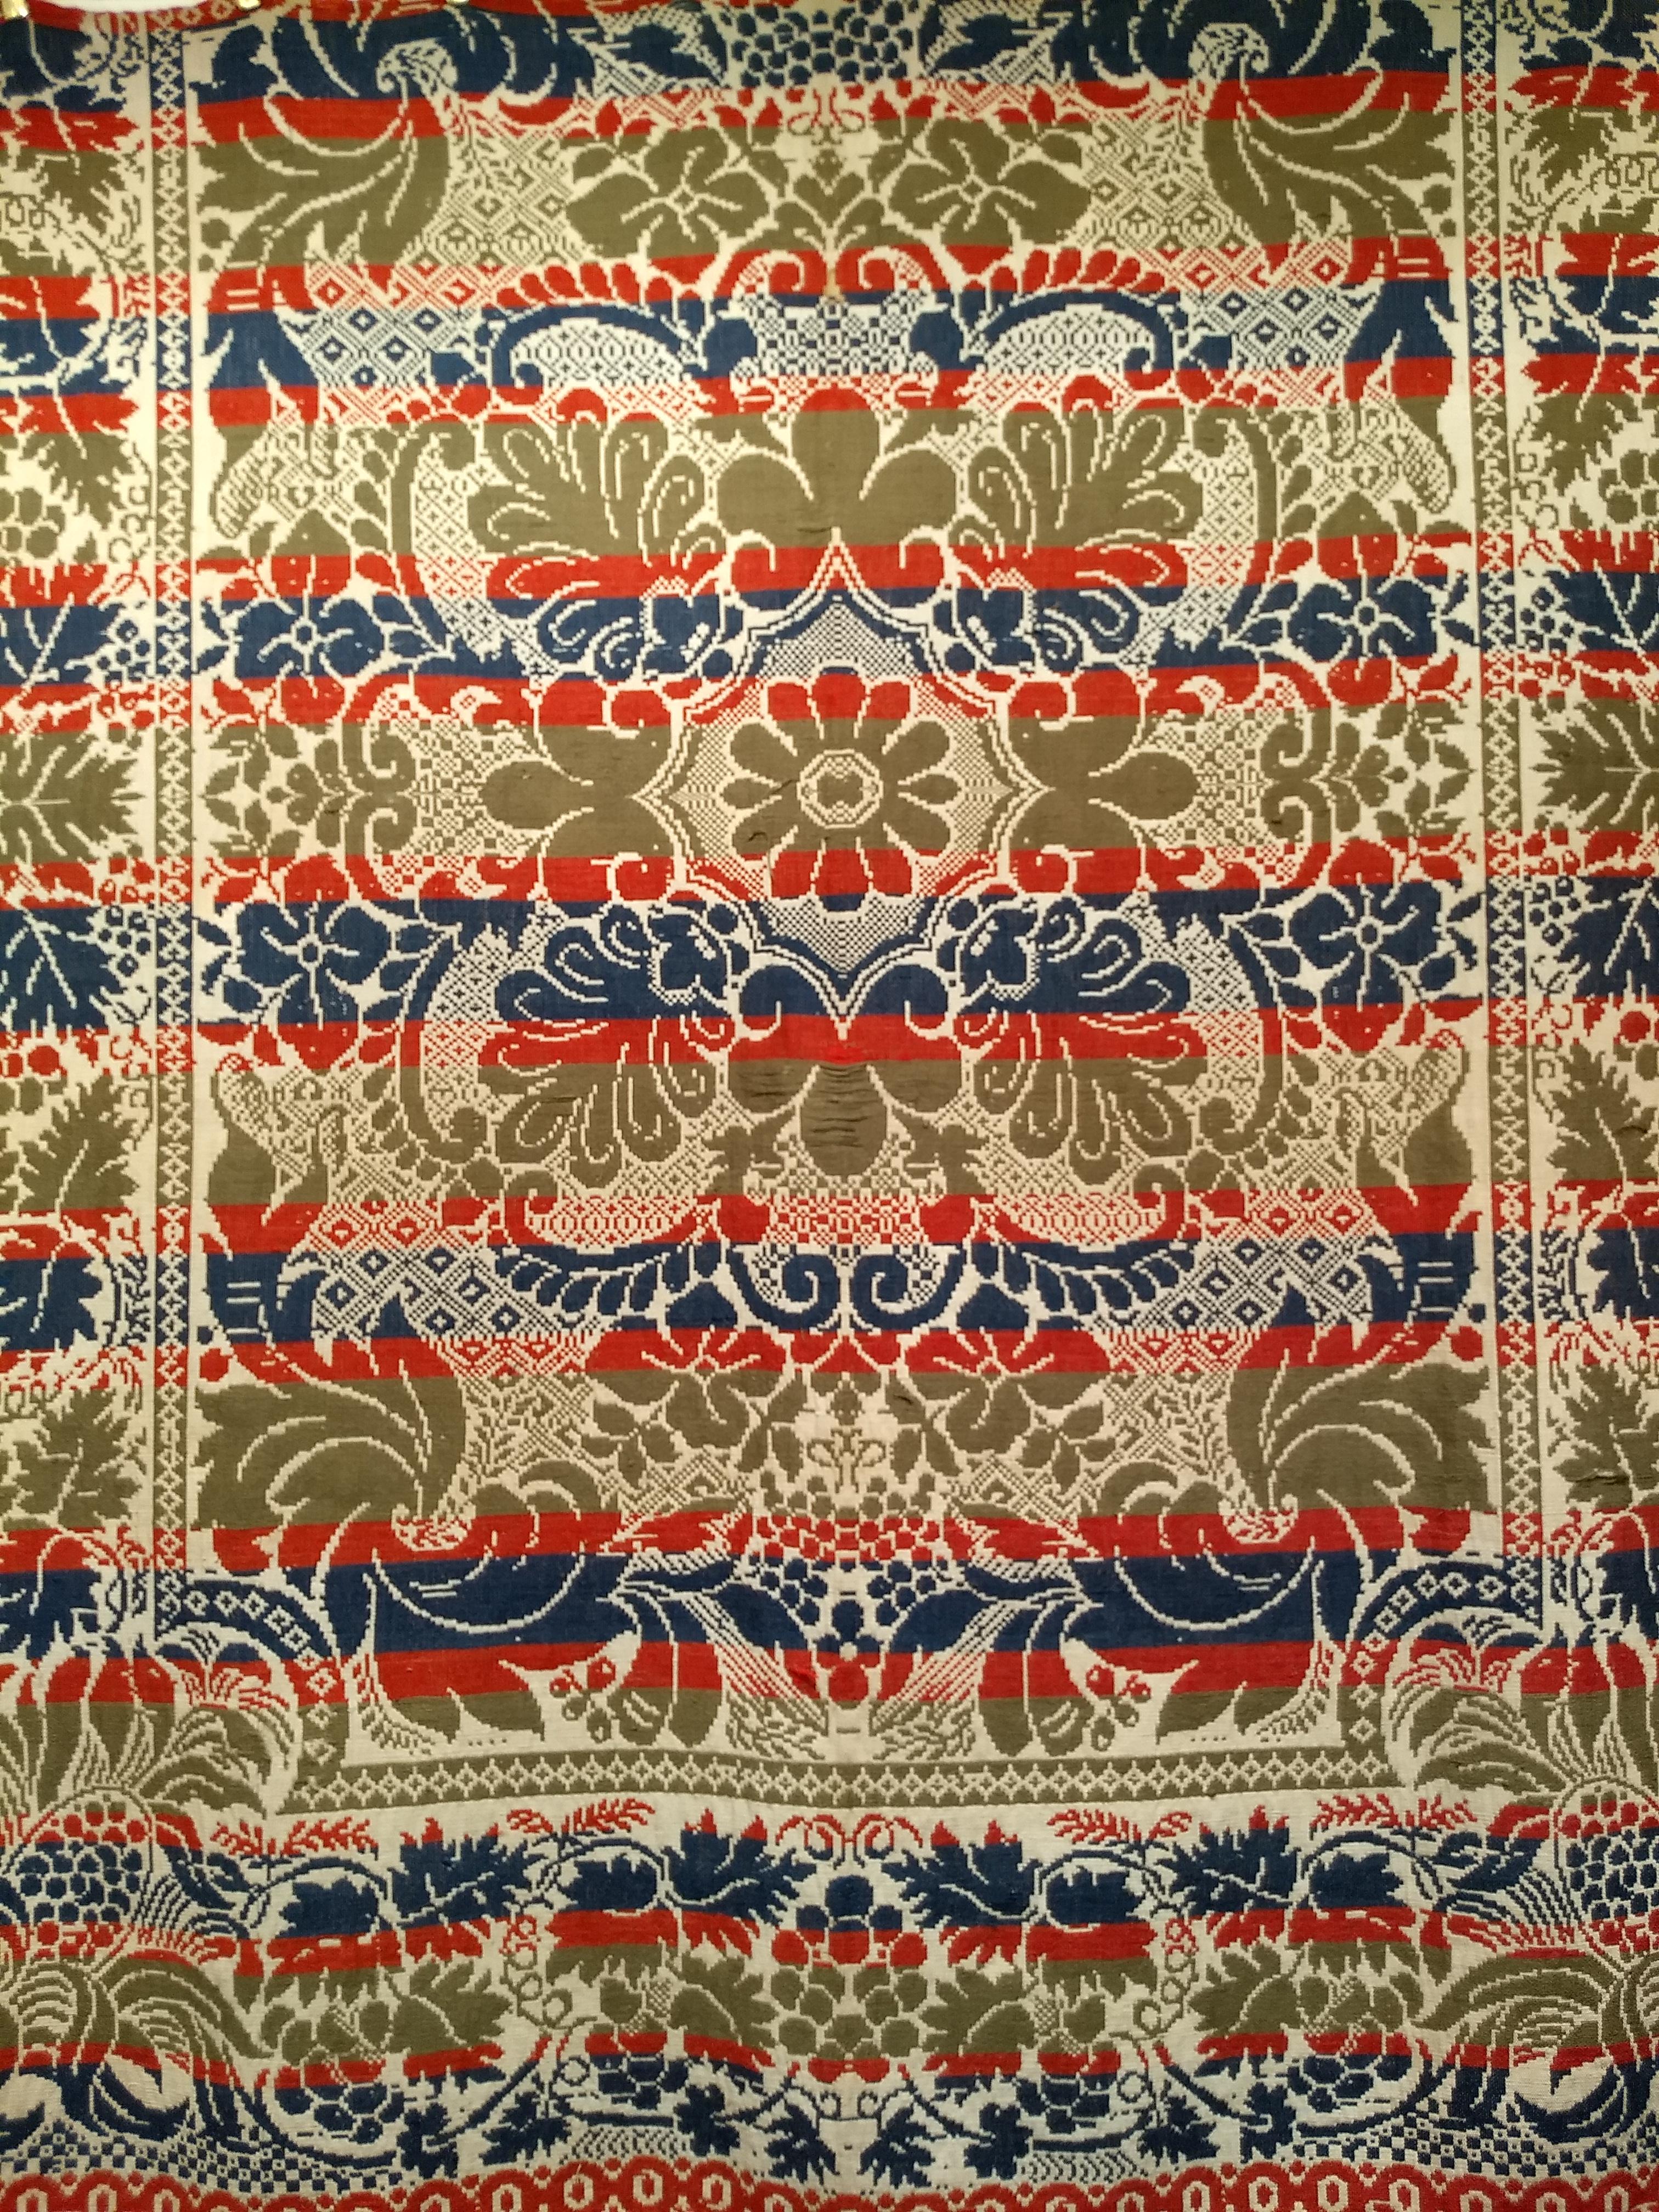 Ein wunderschönes Pennsylvania American Coverlet aus der Mitte des 19. Jahrhunderts.  Das American Coverlet hat ein großformatiges Blumenmuster in Rot, Blau und Grün auf einem elfenbeinfarbenen Hintergrund.  Die amerikanischen Überwürfe wurden